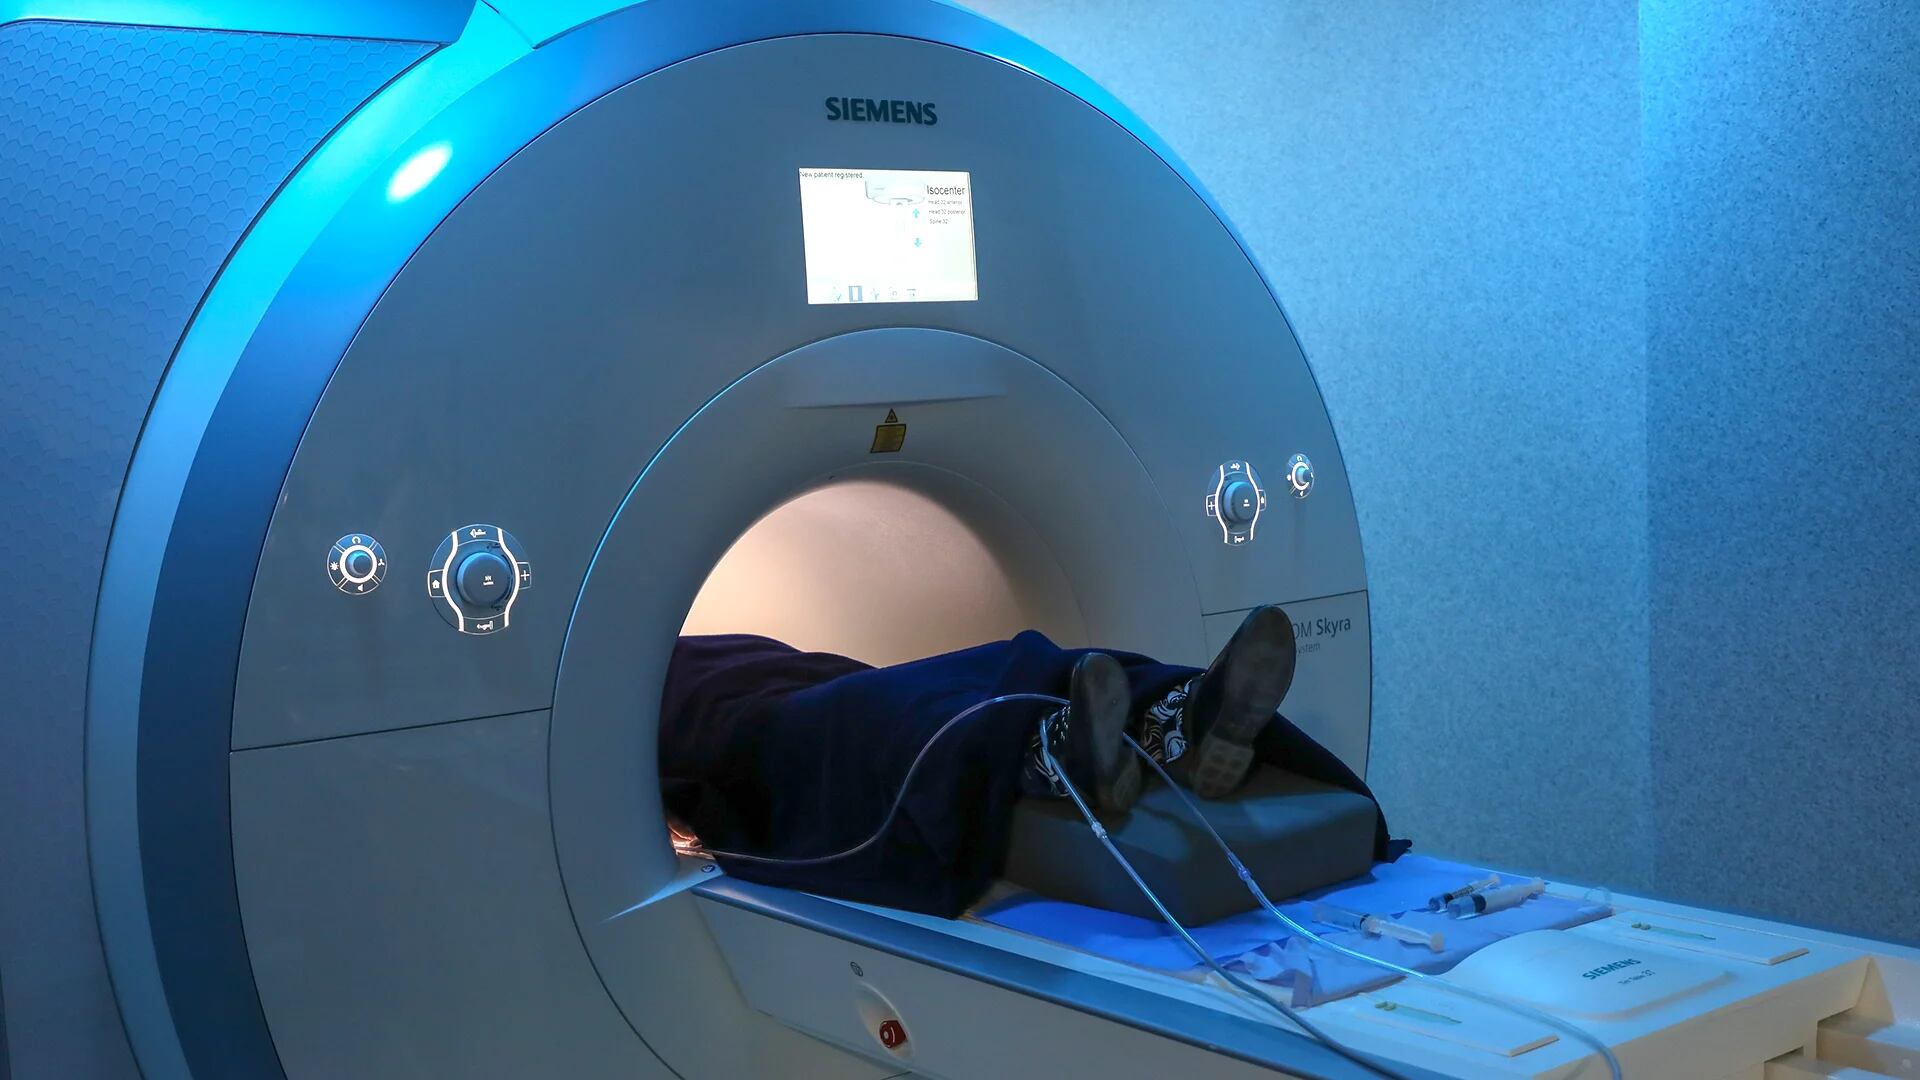 Ambos centros oncológicos eligieron el equipamiento de alta tecnología (Siemens Healthineers) para el diagnóstico por imágenes, que permite detectar la enfermedad con precisión y cuidando el tejido sano del paciente